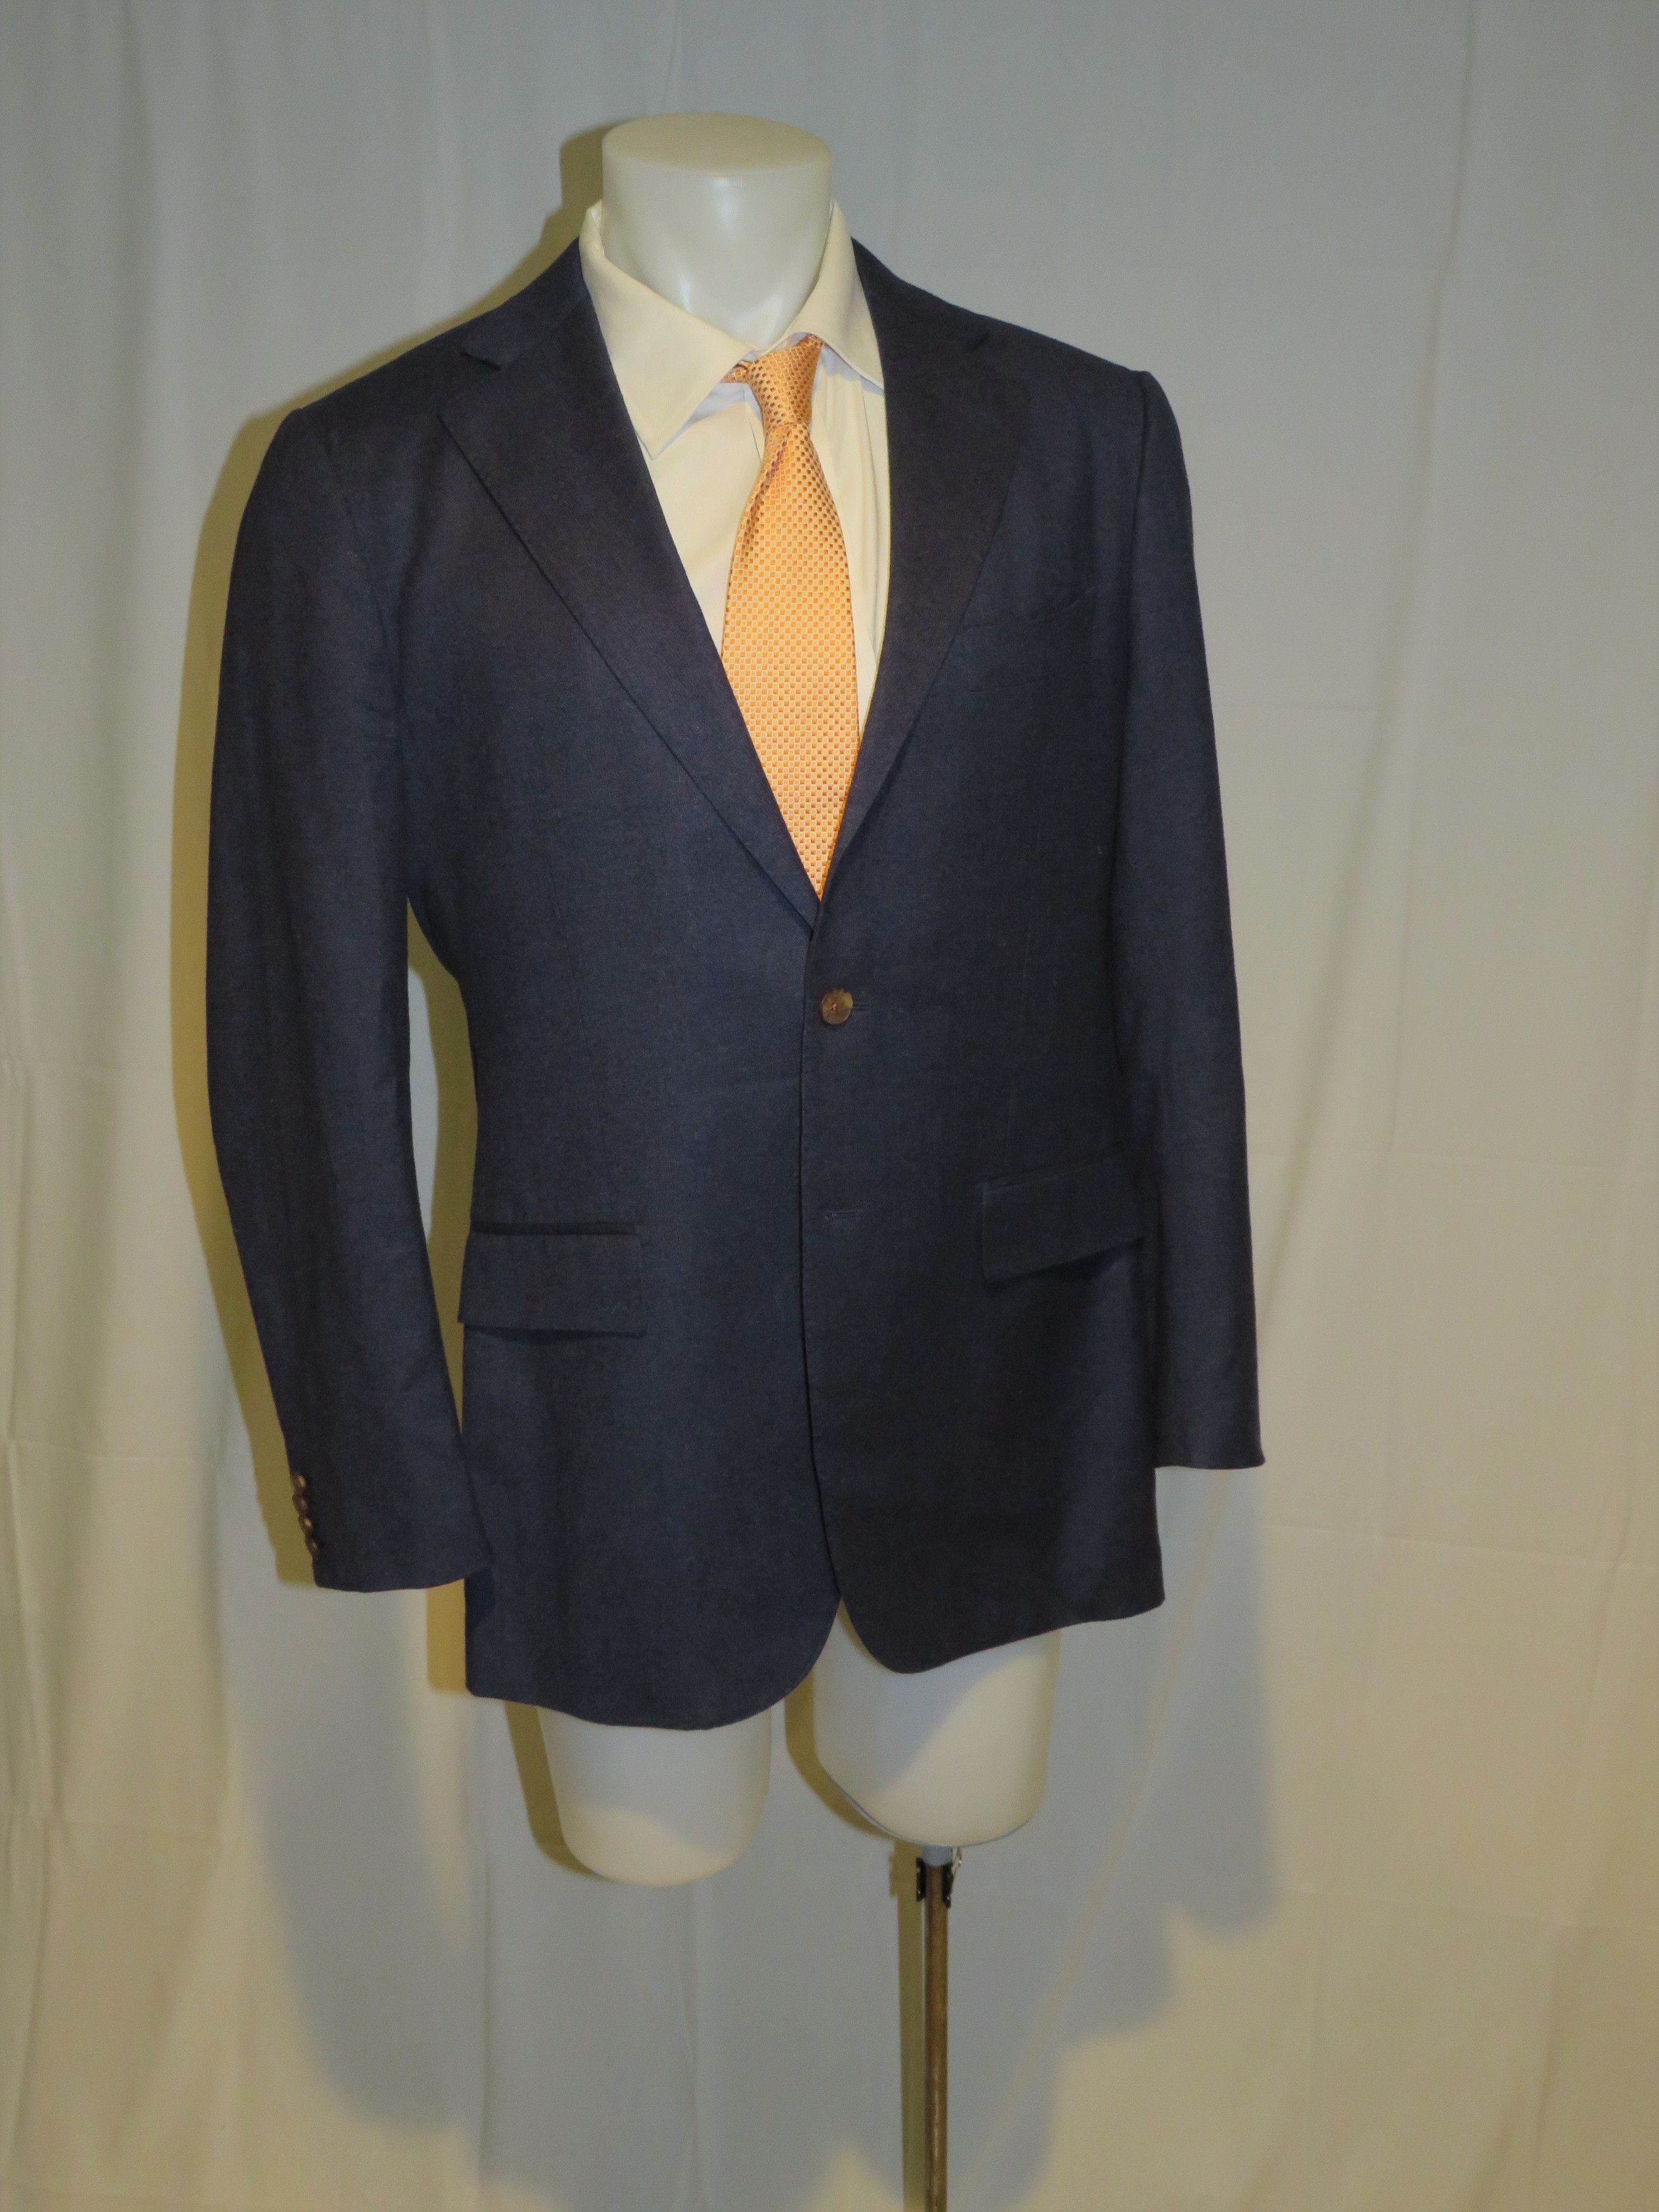 Suitsupply La Spalla Vitale Cashmere Blend Blue Plaid Sport Coat 44L Size 44L - 6 Thumbnail